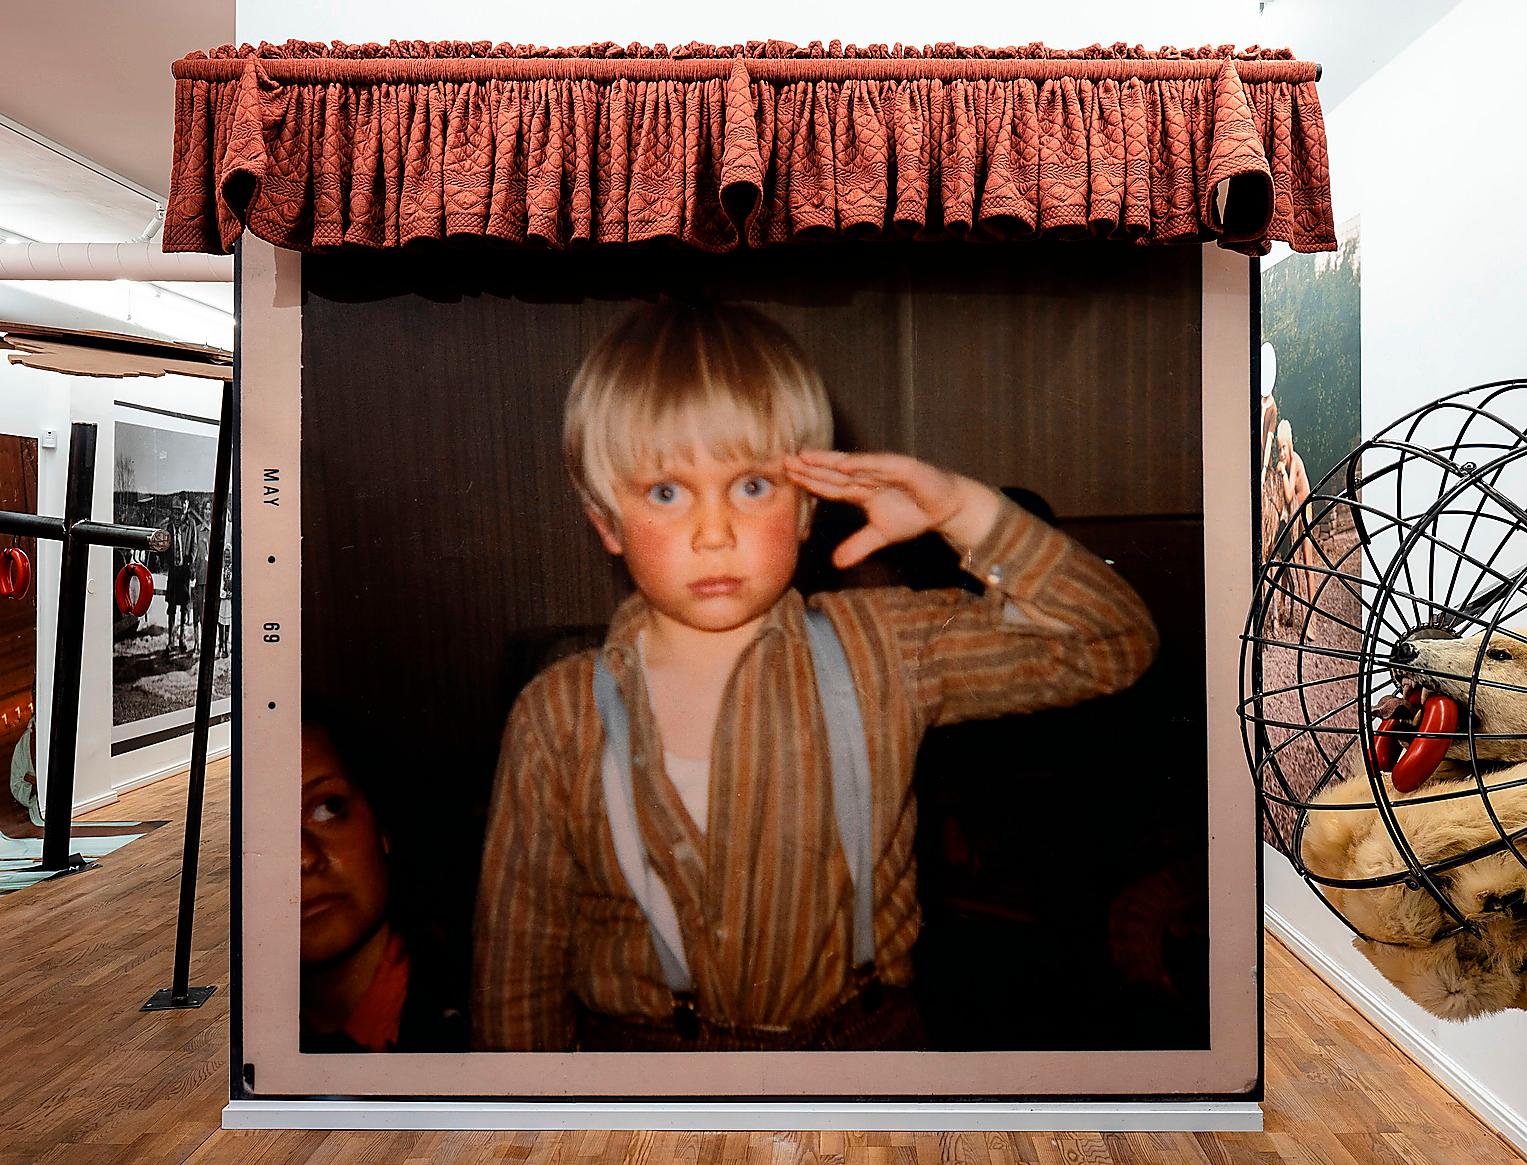 ”Konstnären som ung”, fotografi från 1969 ur familjealbum, printat på canvastapet. Från Peter Johanssons utställning Barnatro.